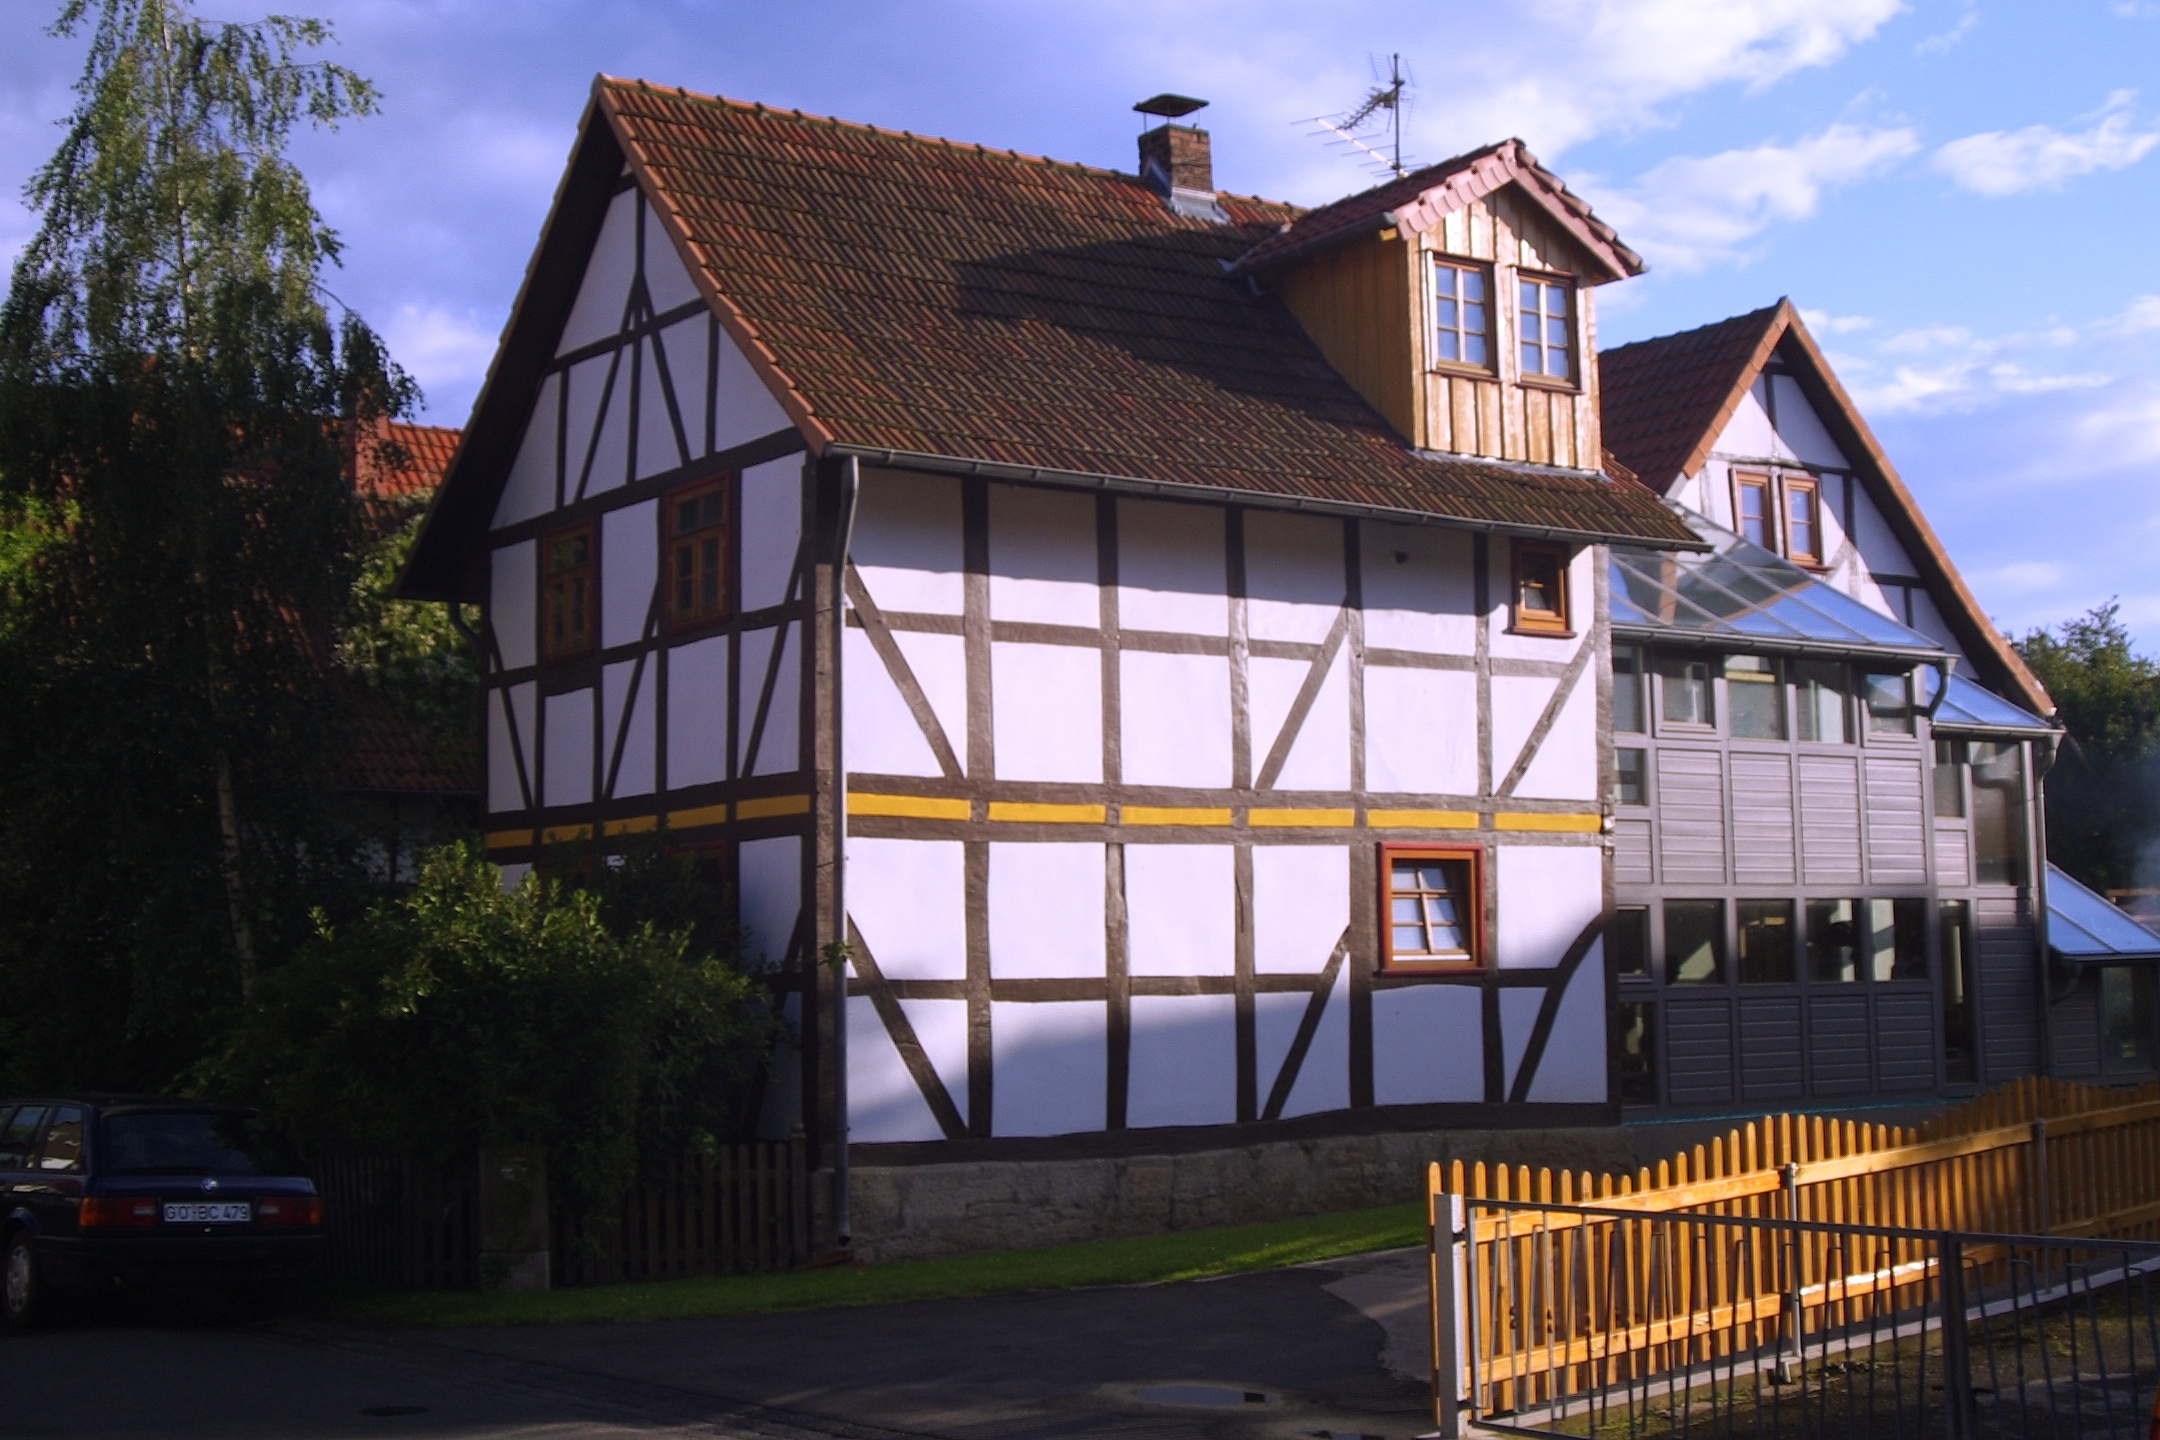 Ehemaliger Gesindehof mit zwei Häusern, Wintergarten und Scheune